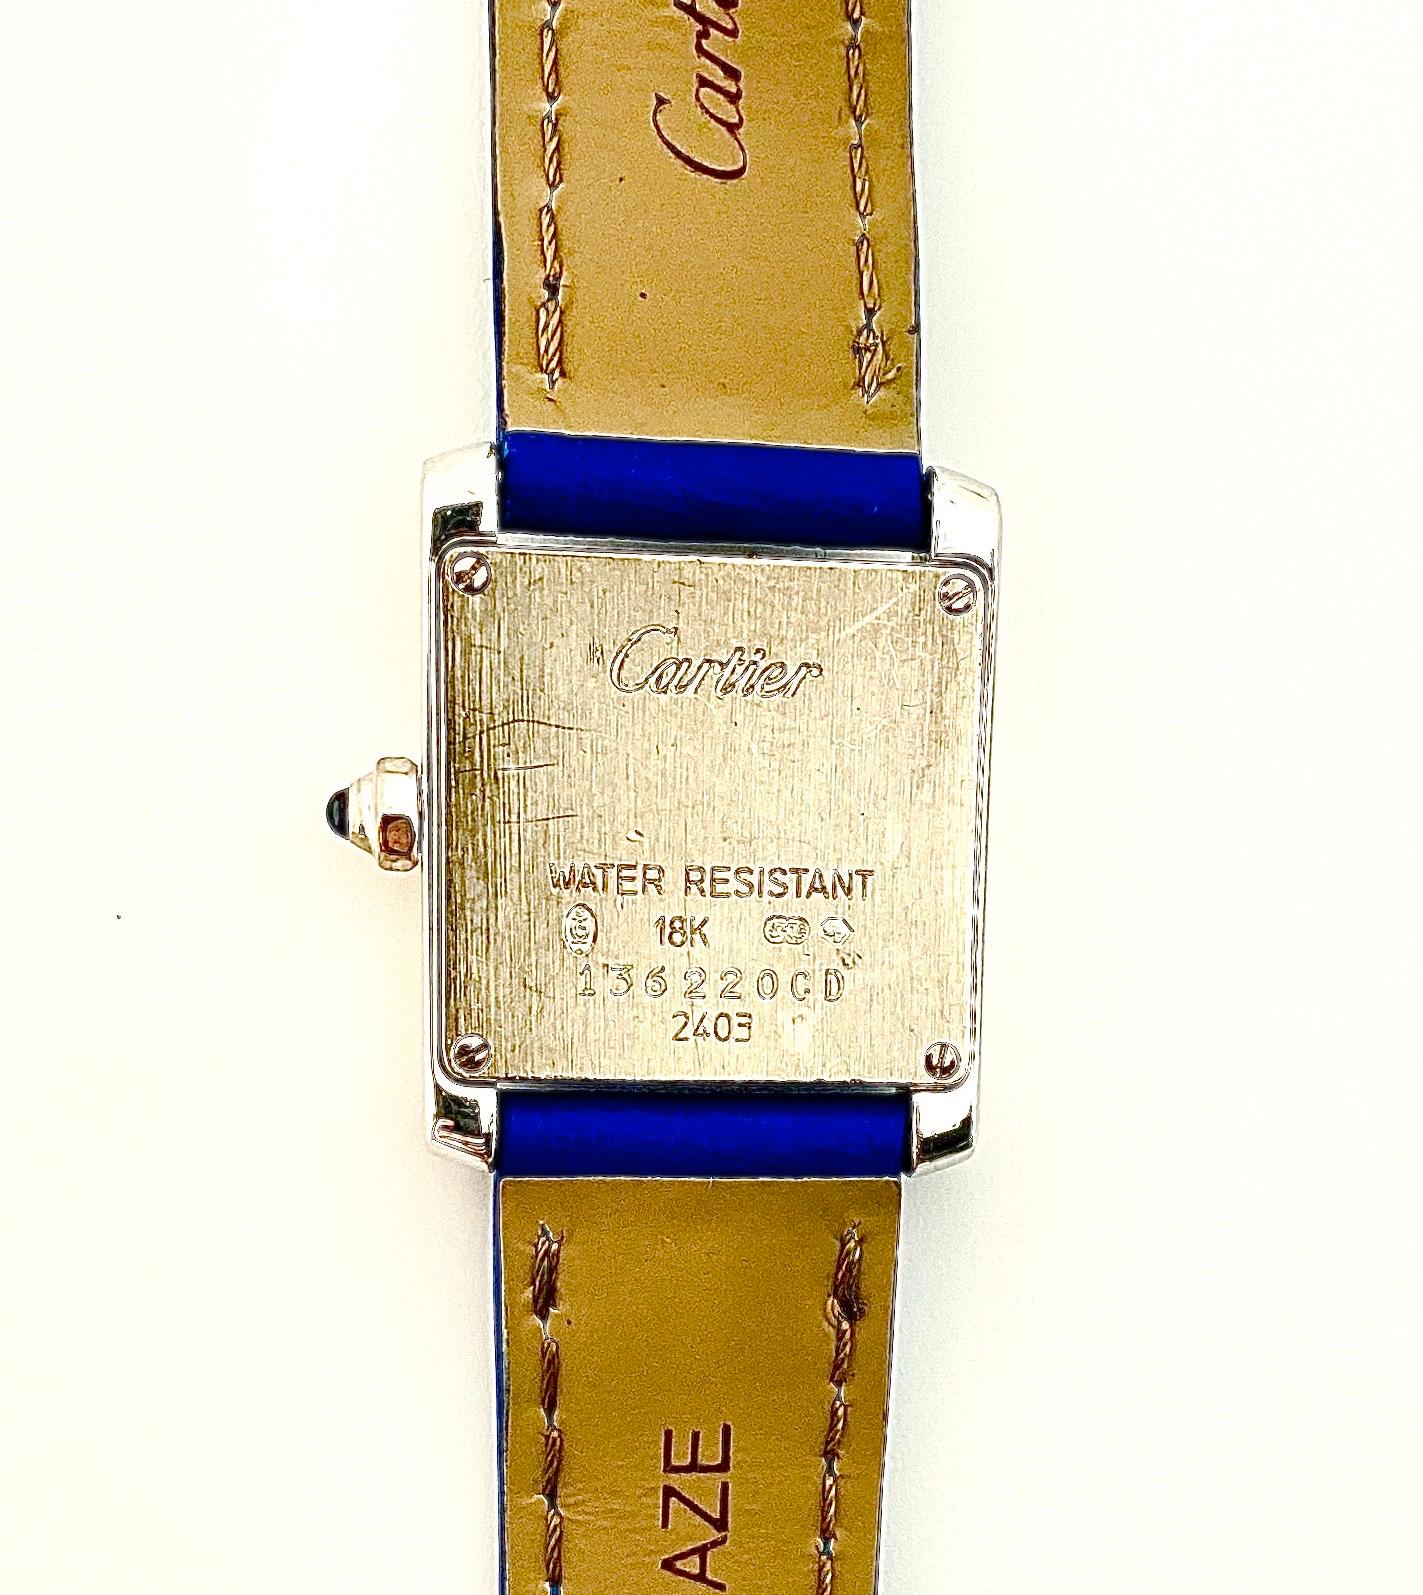 cartier blue sapphire watch